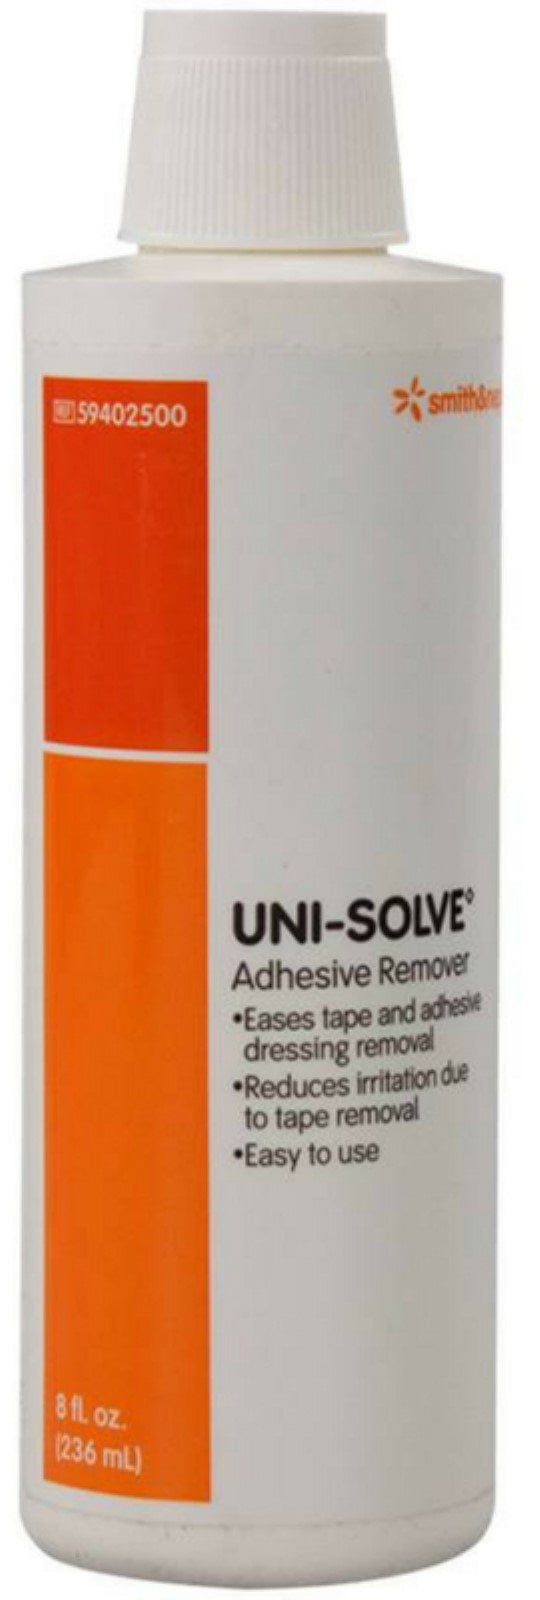 Uni-Solve Adhesive Remover Liquid [59402500] 8 oz (Pack of 2